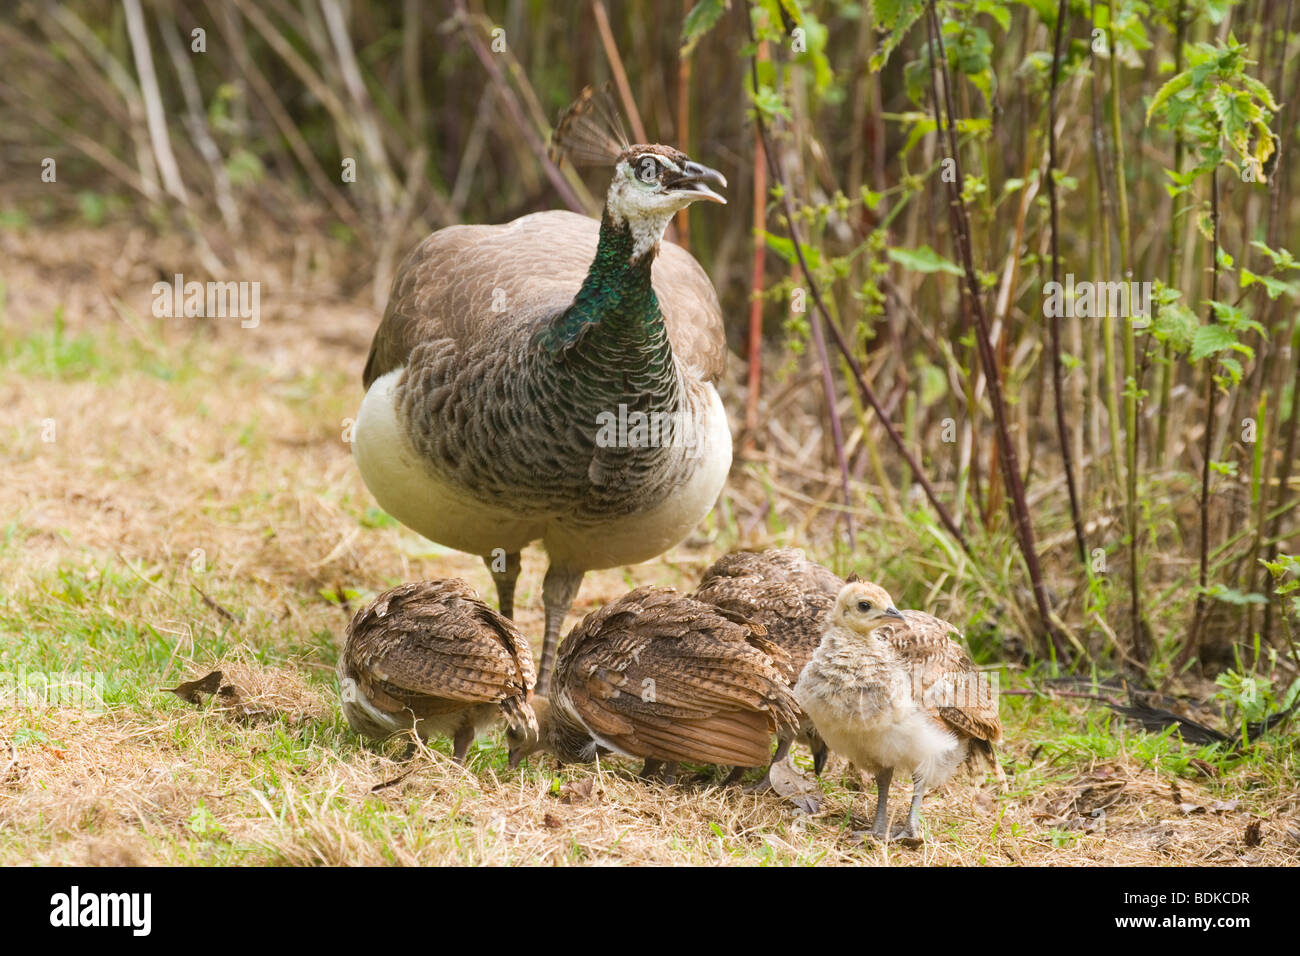 Comune, Indiano o Peafowl blu (Pavo cristata). Peahen, o femmina, ed alimentazione di pulcini. Foto Stock